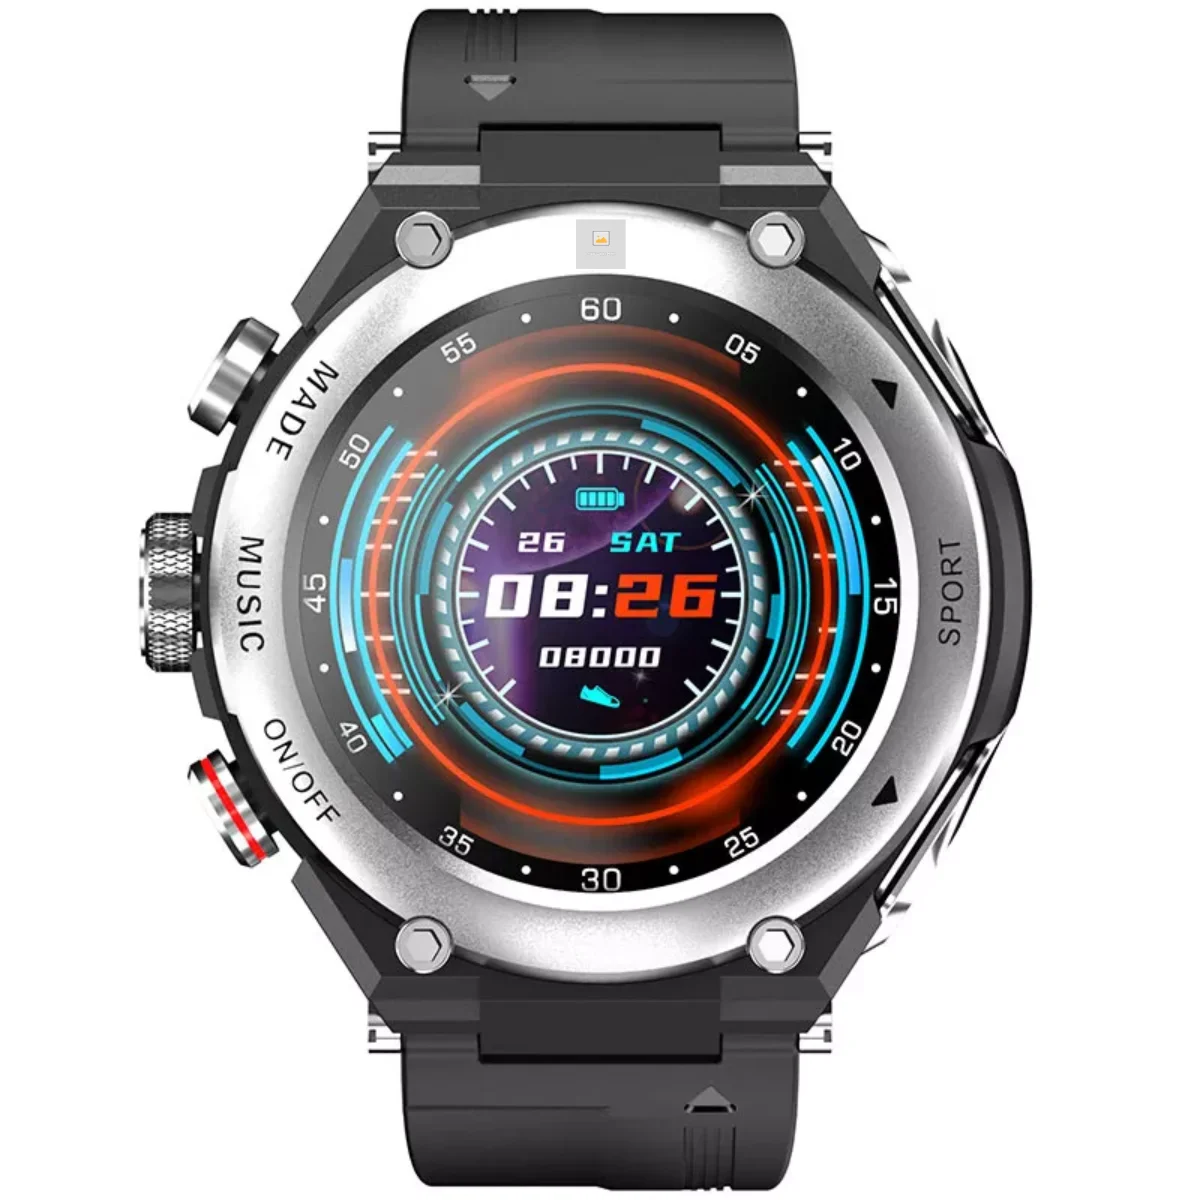 

2021 BT call function GPS Fitness Bracelet music reloj smart watch with headphone TWS earphone wireless earbud 2 in 1 smartwatch